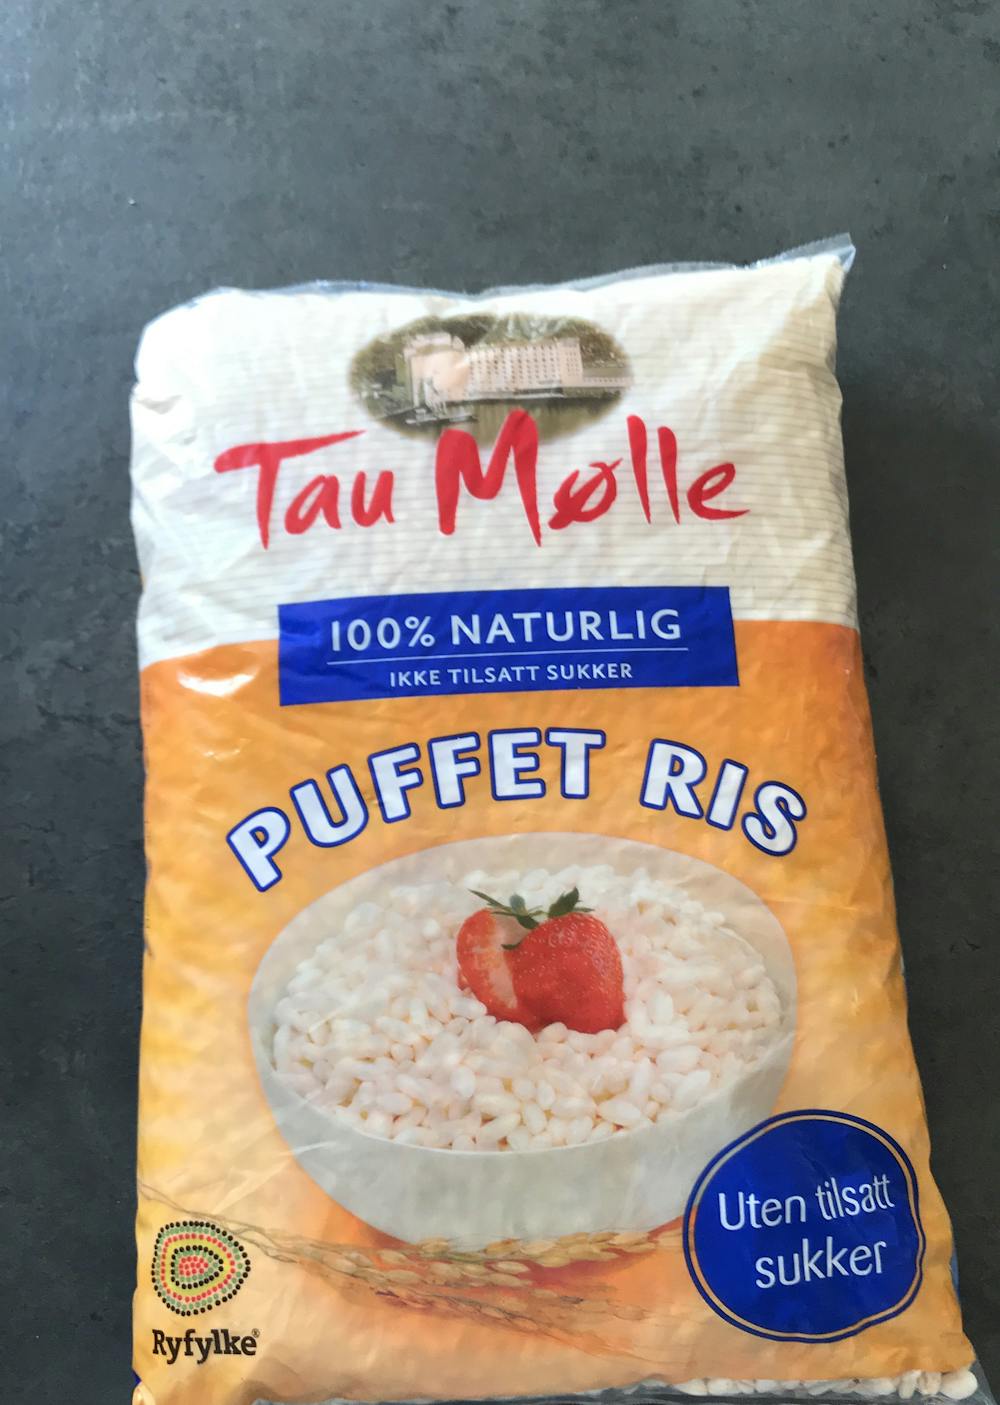 Puffet ris, Tau Mølle